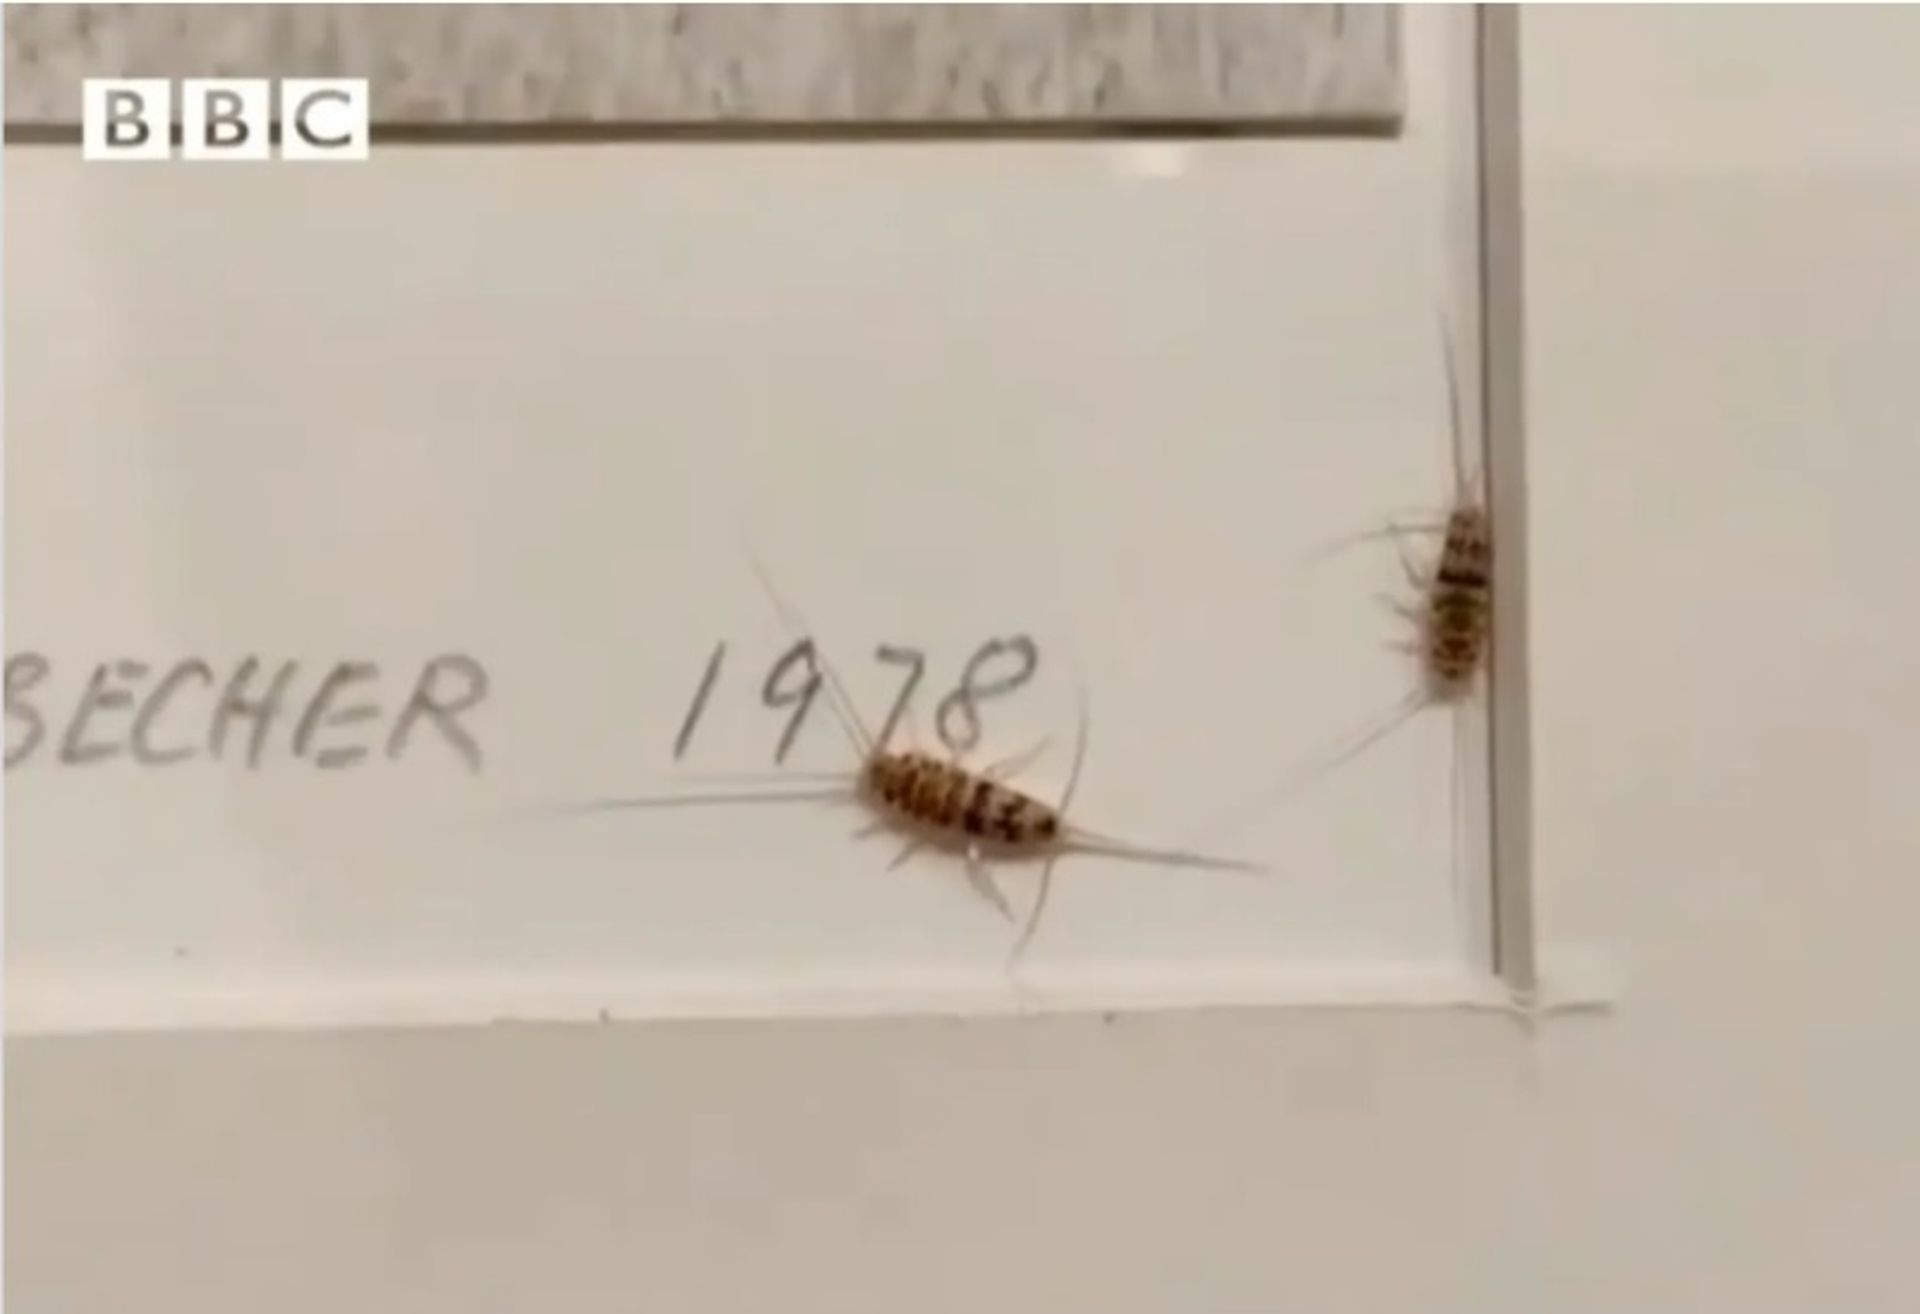 צמד חרקים לכודים בתוך עבודה של ברנד והילה בכר

BBC Persia, דרך אינסטגרם